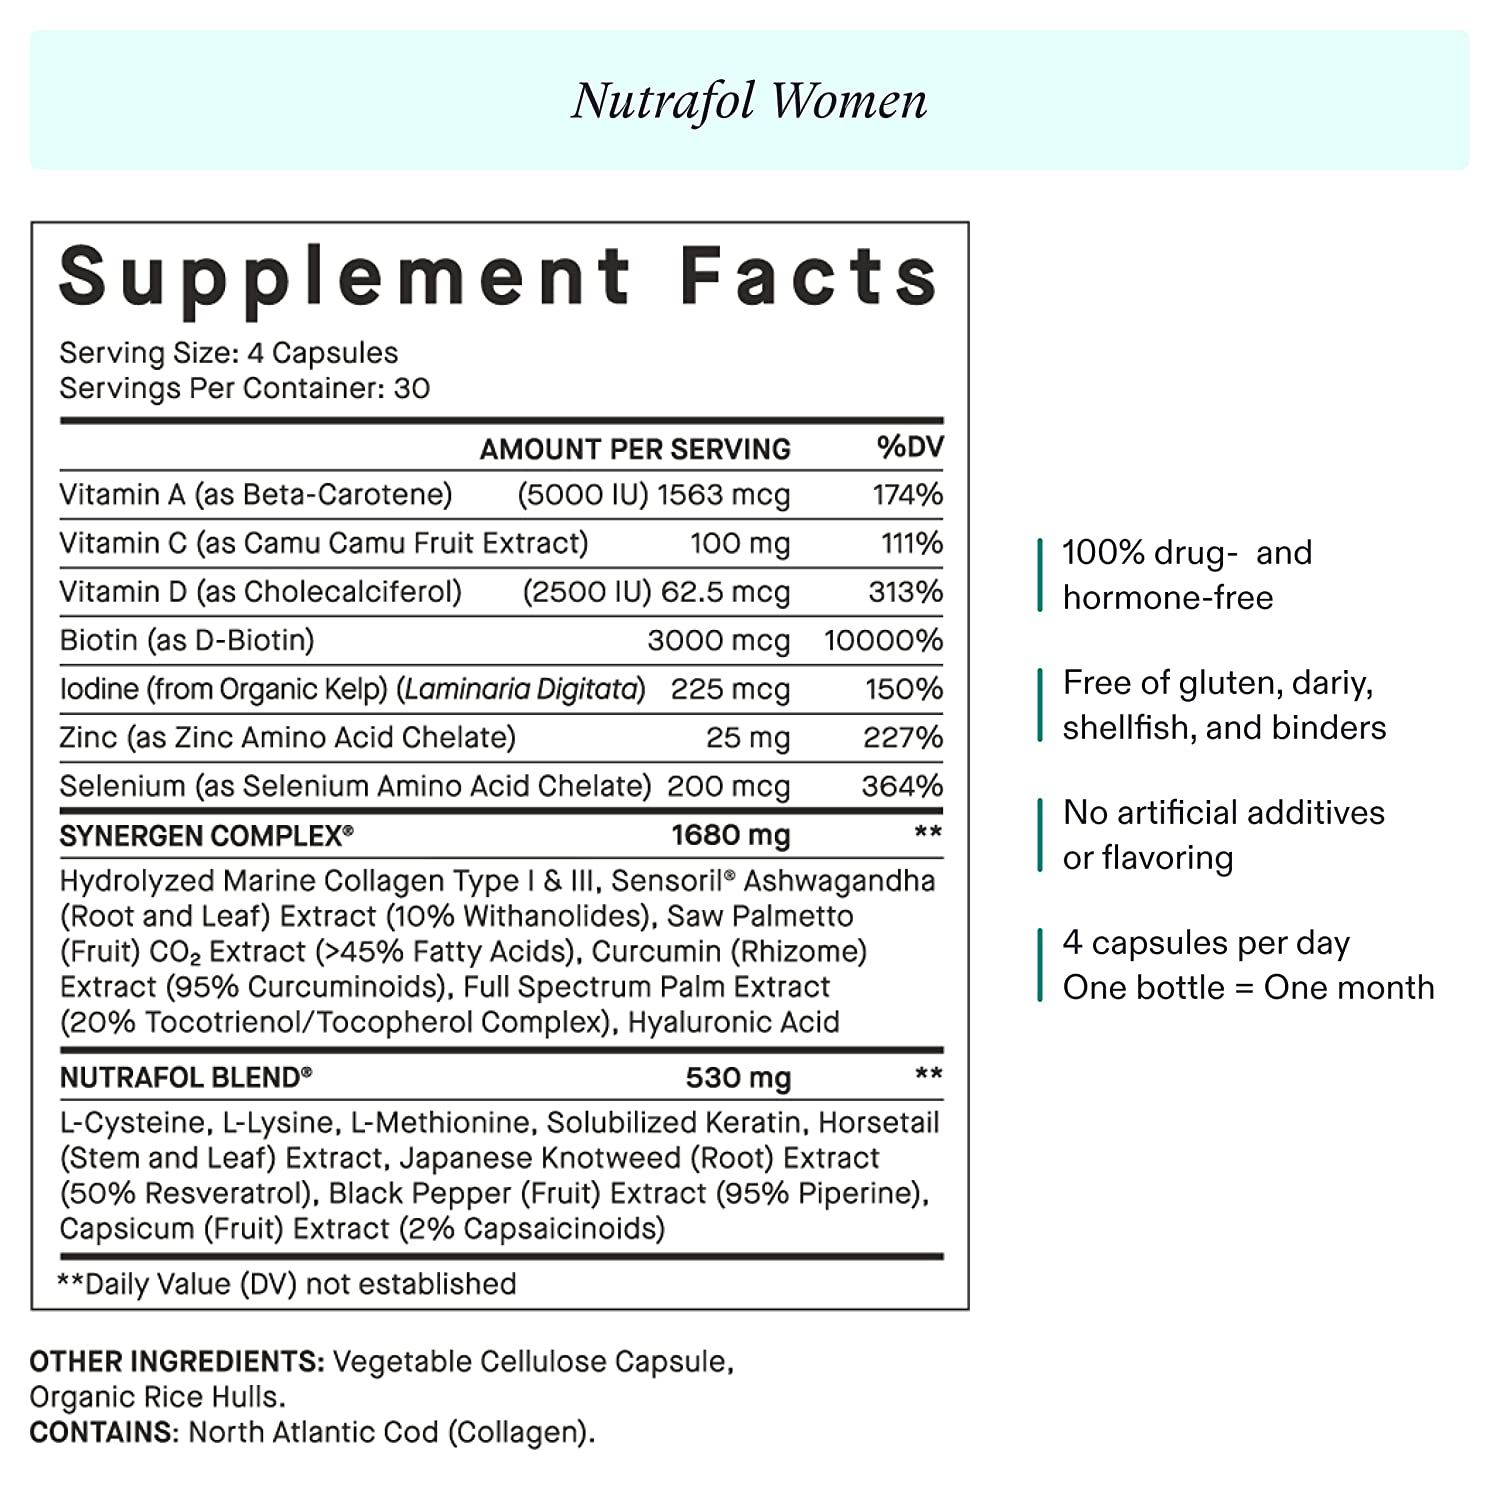 Nutrafol Women Supplement Facts.jpg